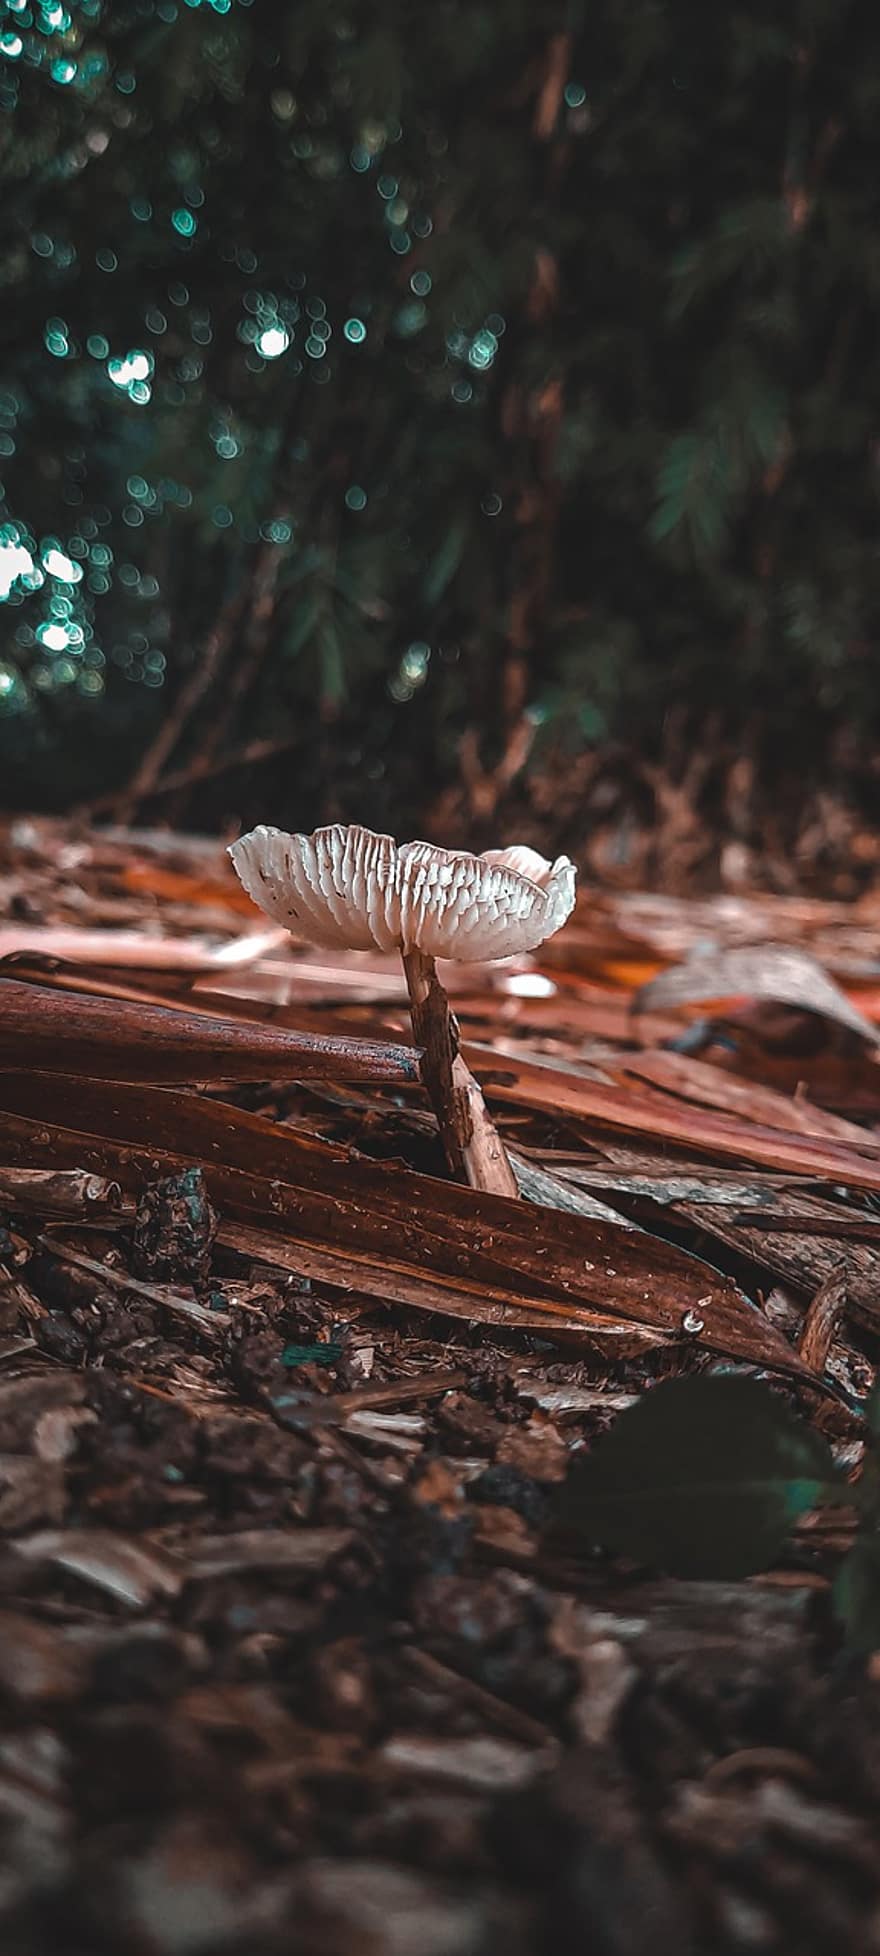 Mushroom, Ground, Leaves, Toadstool, Fungus, Forest, Nature, Closeup, Winter, Indonesia, Jamur